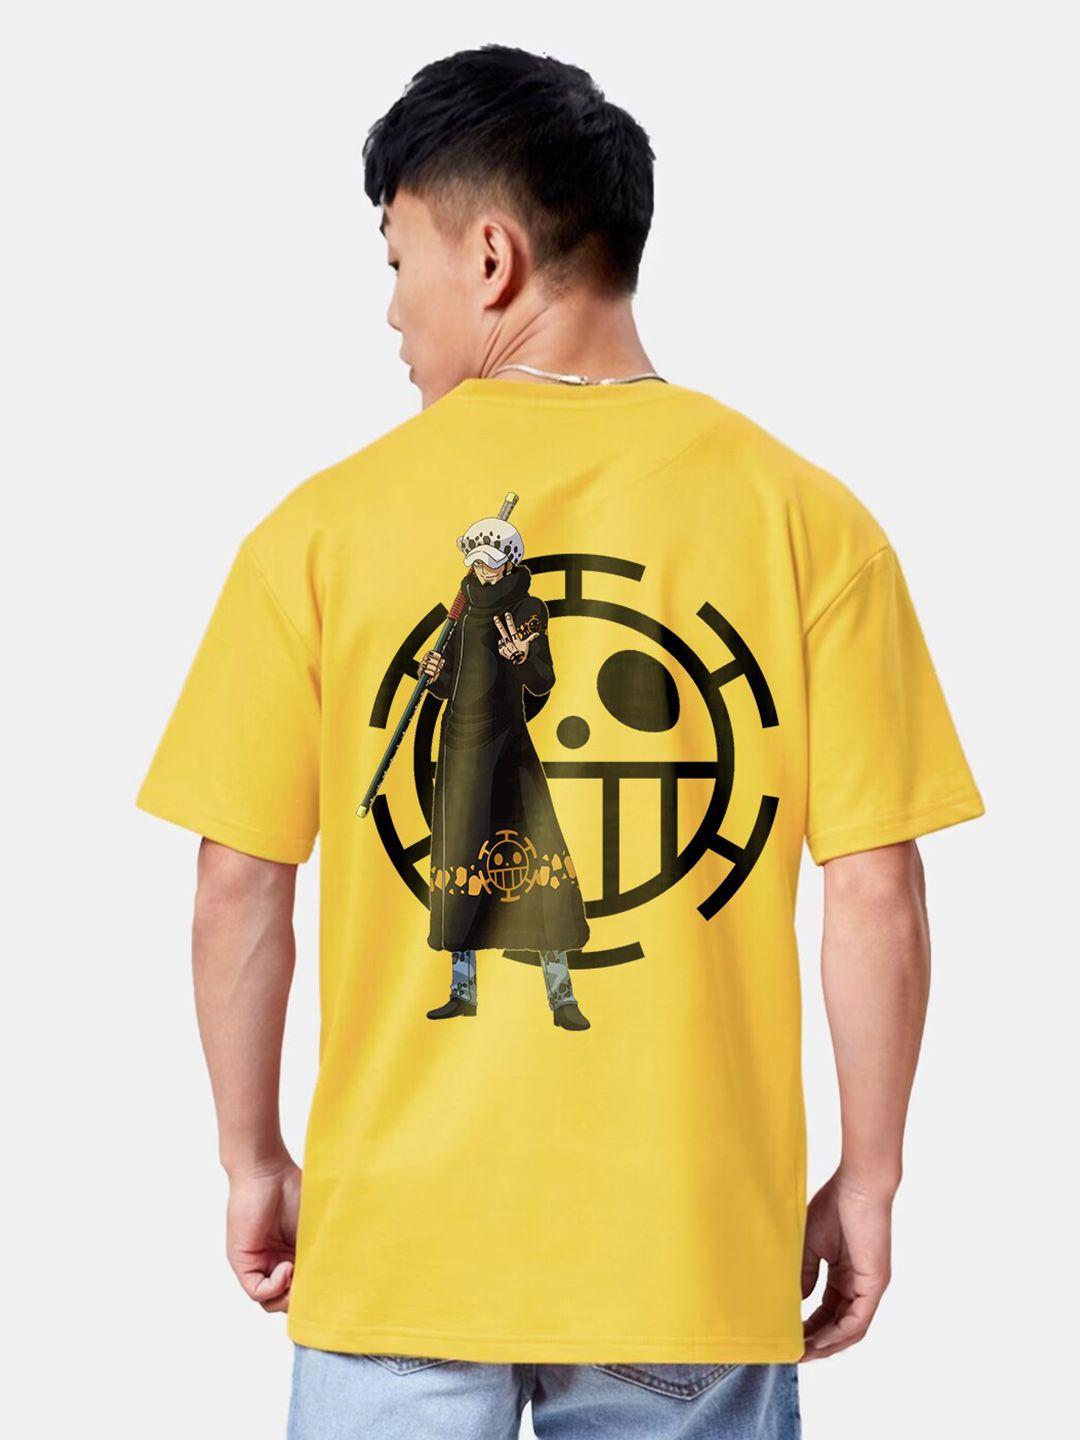 crazymonk unisex yellow printed t-shirt